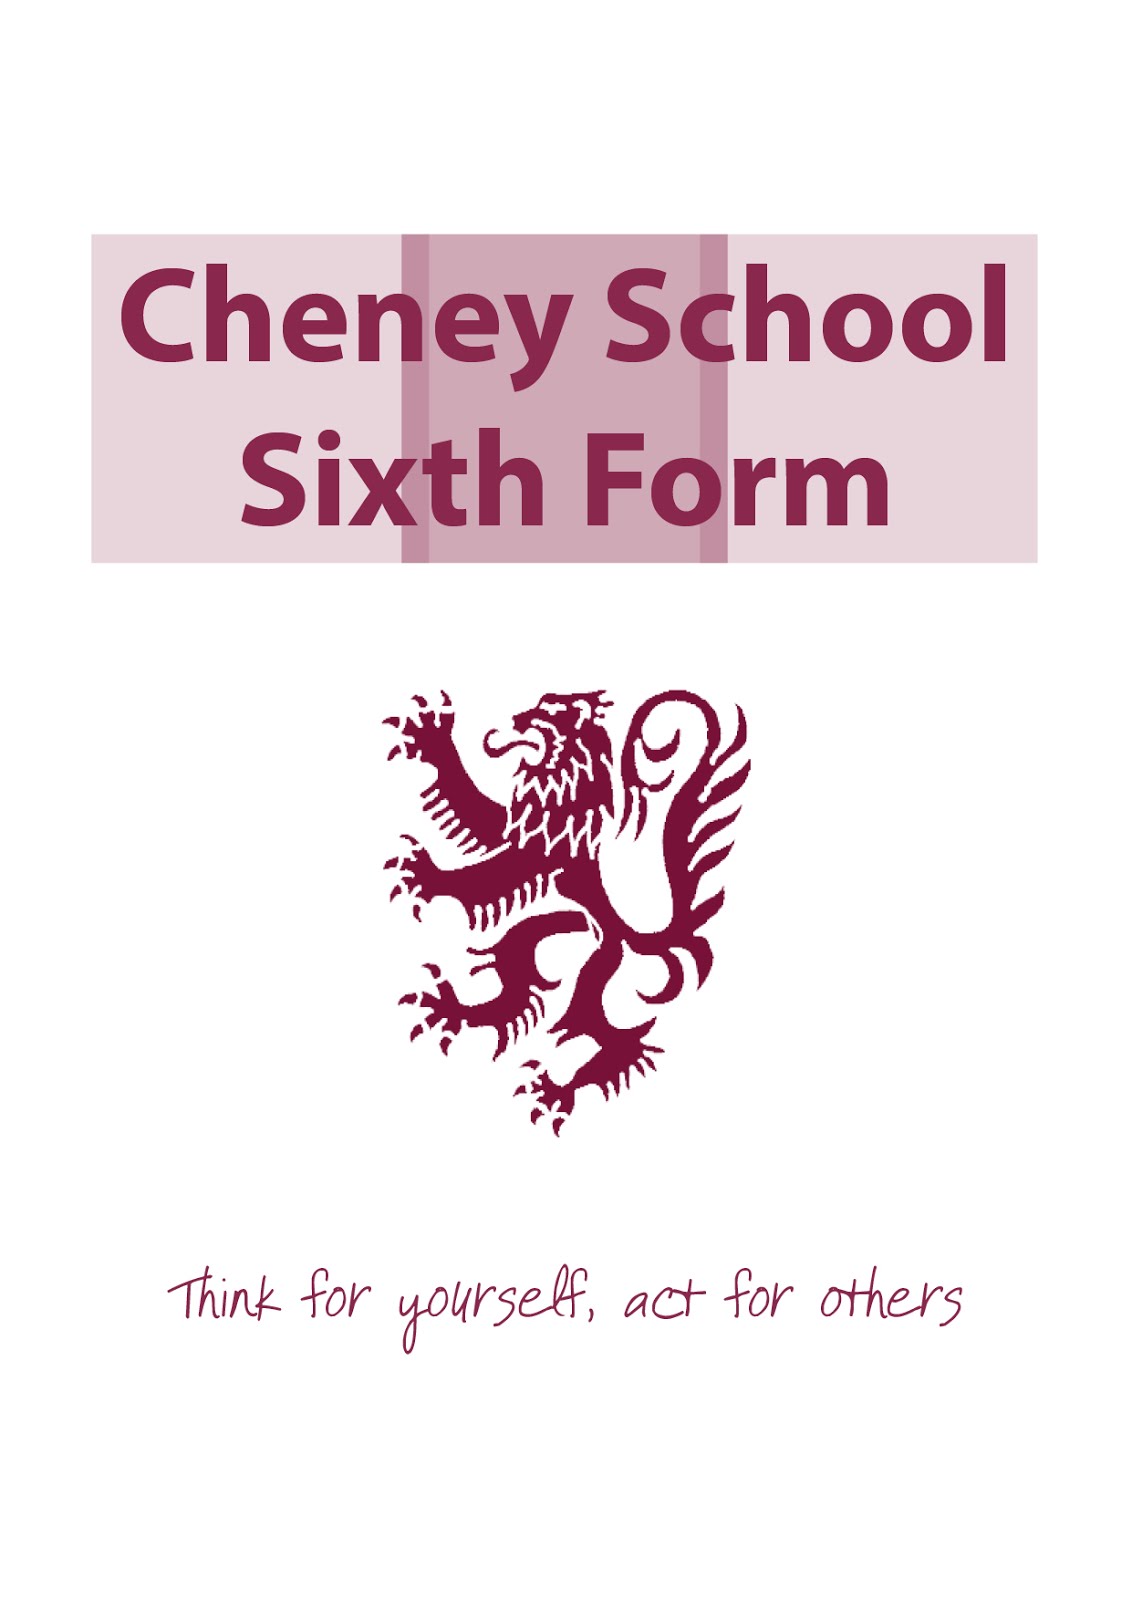 Cheney School Sixth Form